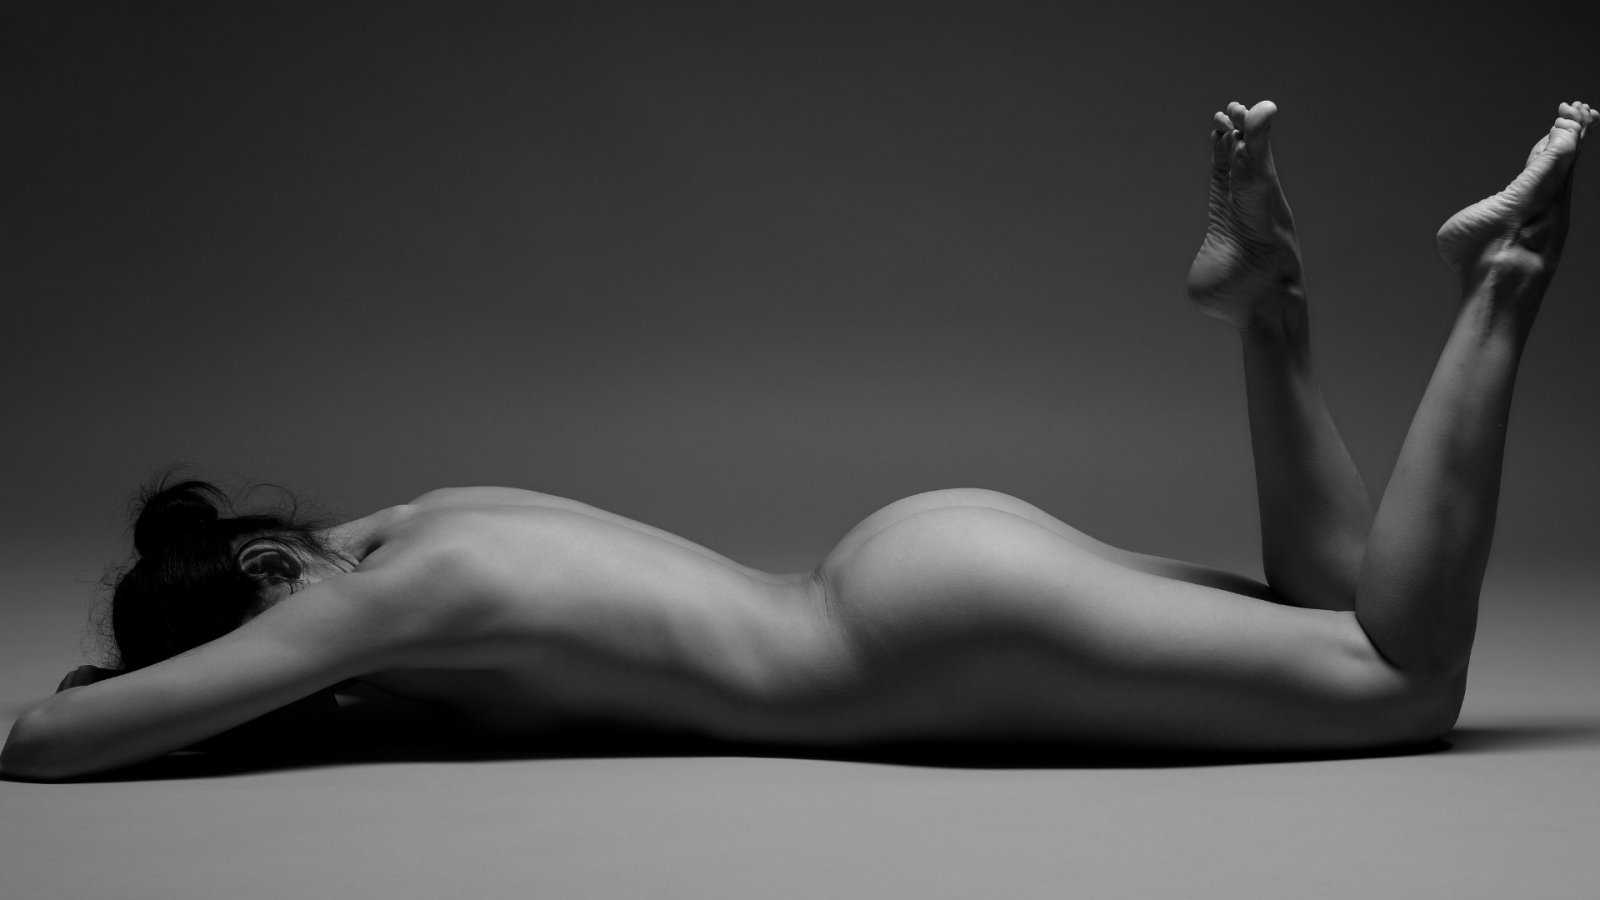 Fotografía de desnudo revolucionario: 3 artistas cuyo audaz trabajo generó controversia